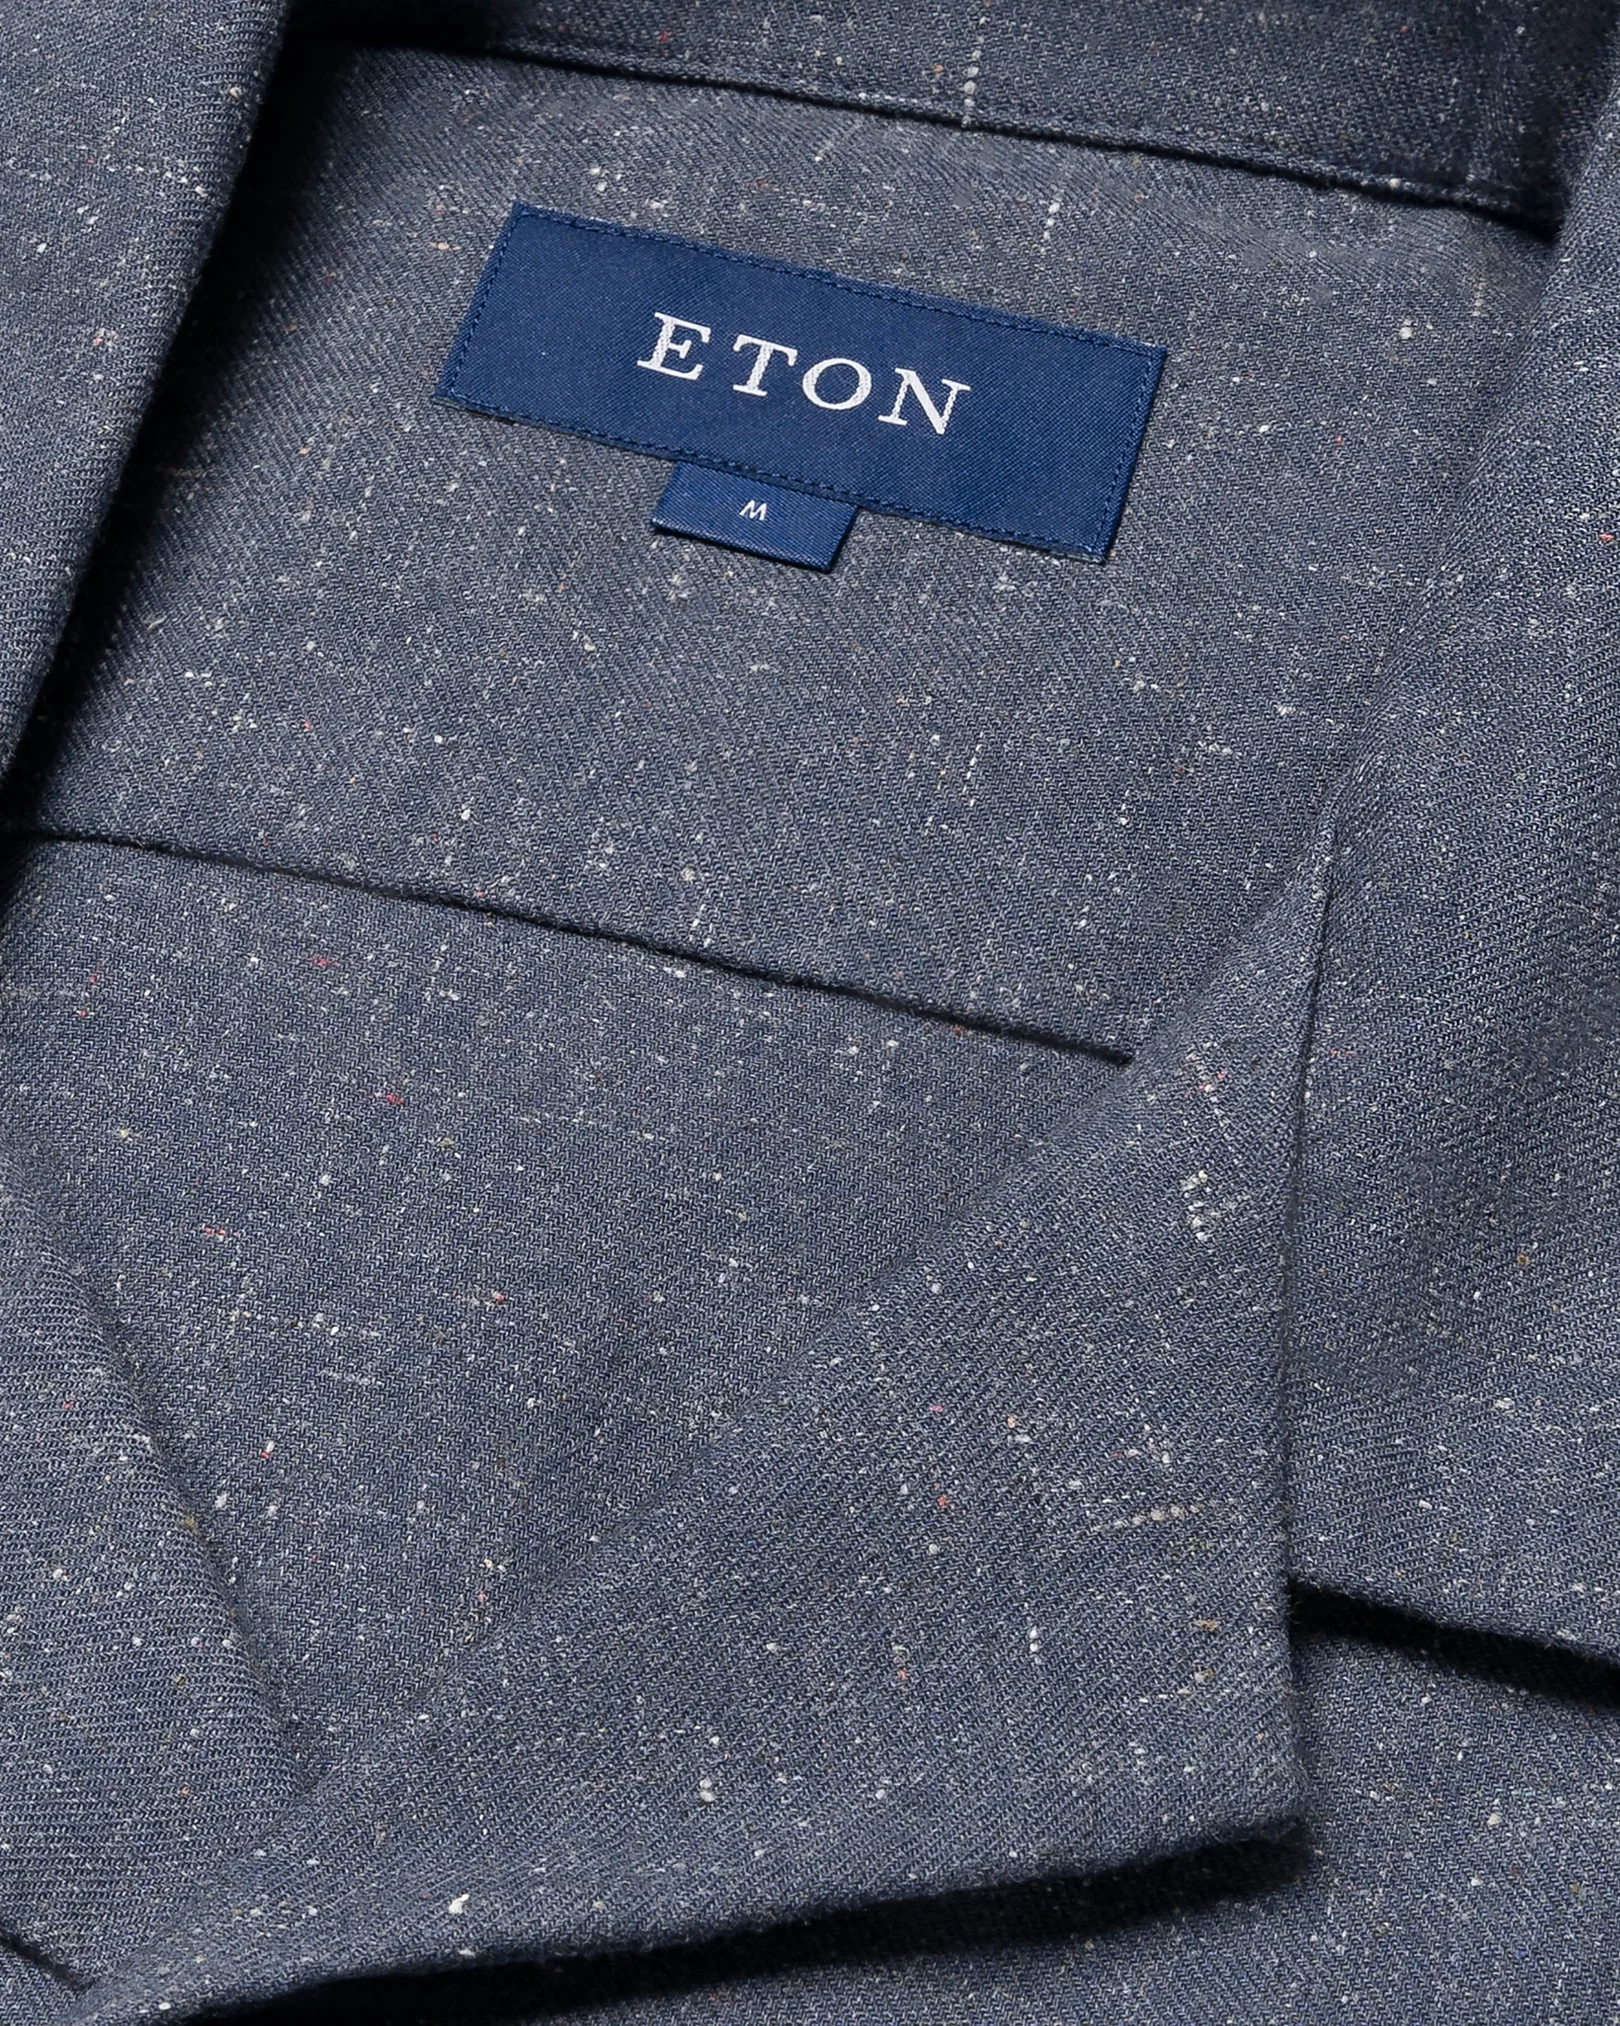 Eton - dark blue recycled cotton resort shirt